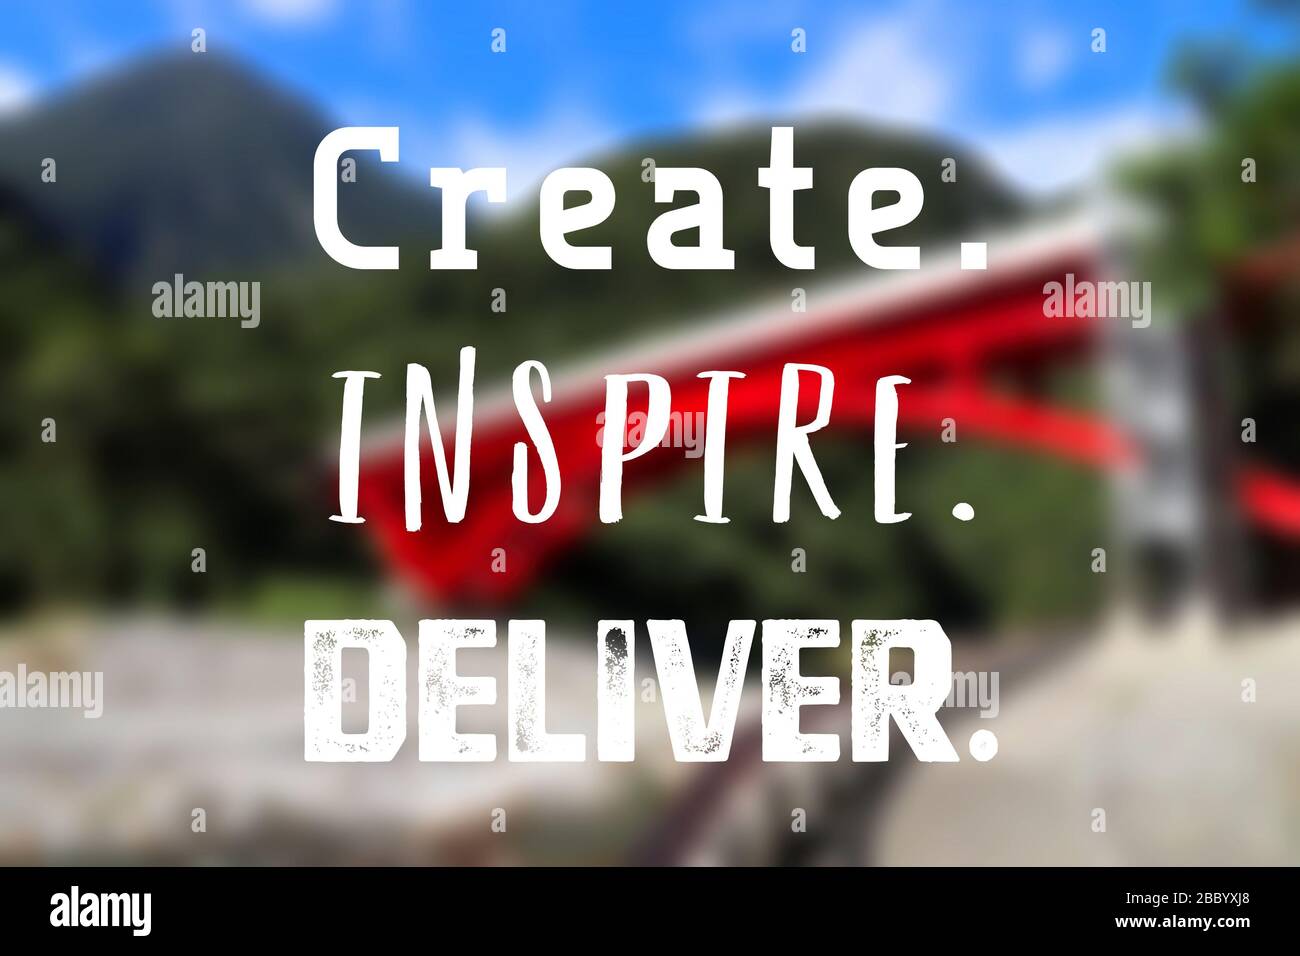 Créez, inspirez, livrez. Poster de devis inspiré sur le lieu de travail. Signe de motivation de succès. Banque D'Images